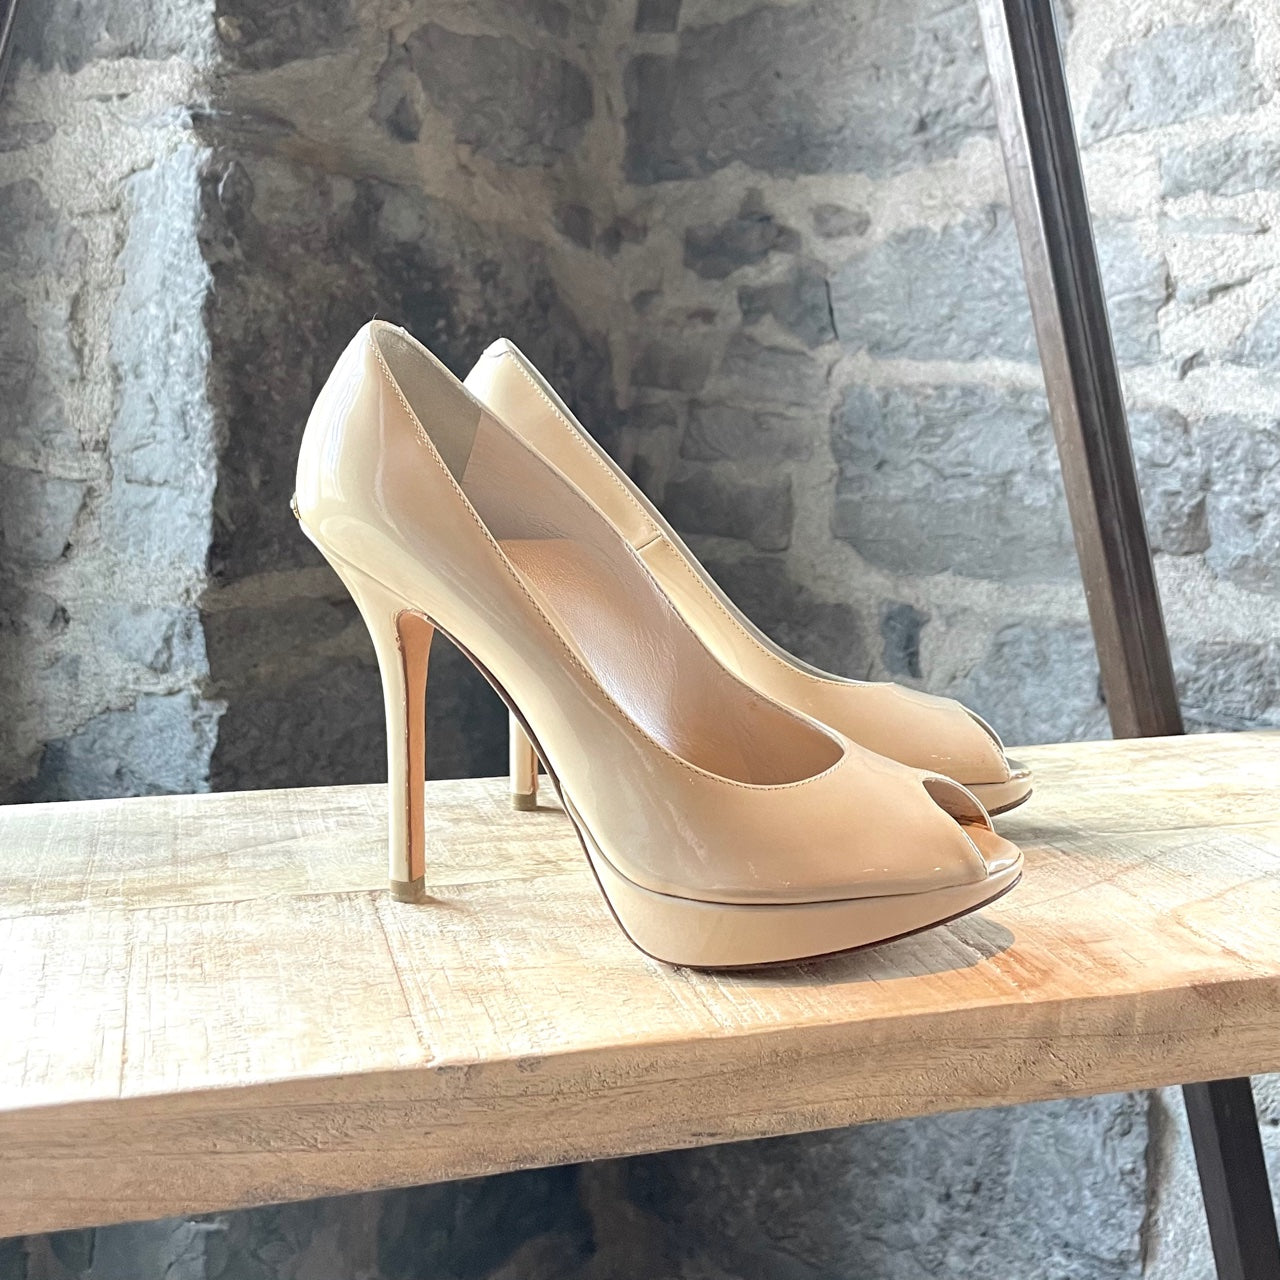 ASOS DESIGN Pronto platform high heeled shoes in beige | ASOS